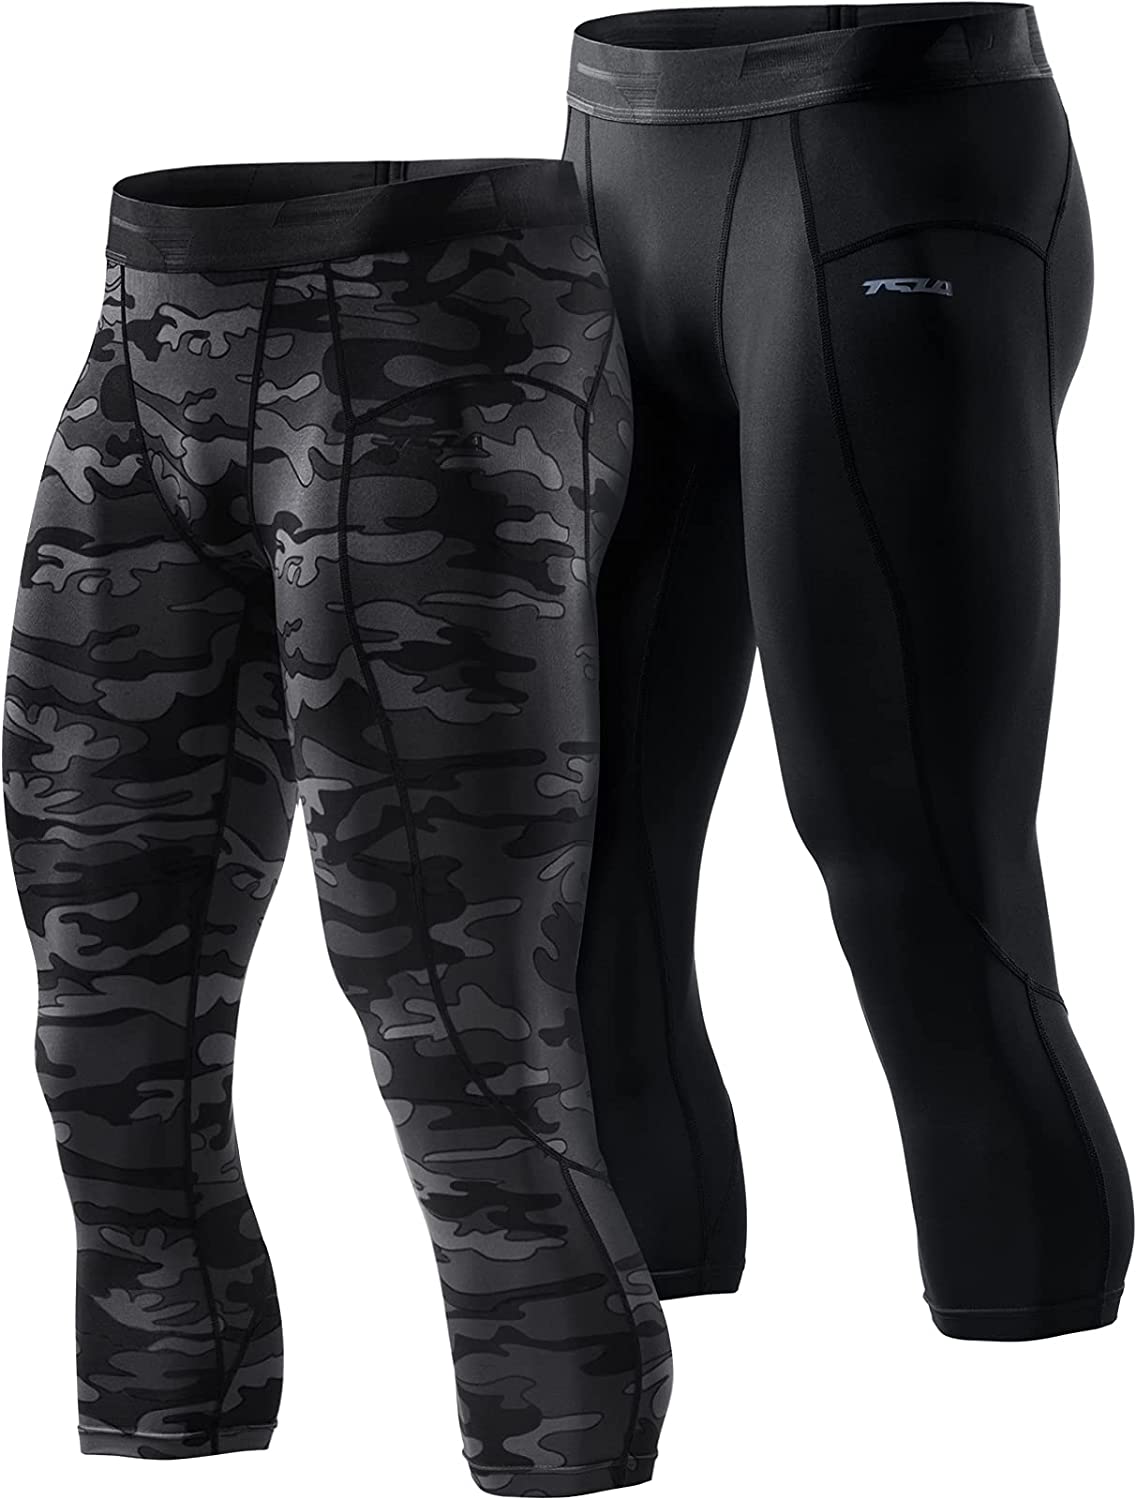 leggings & tights TSLA Pantaloni termici da uomo a compressione a 3/4 leggings sportivi Capri strato inferiore invernale 